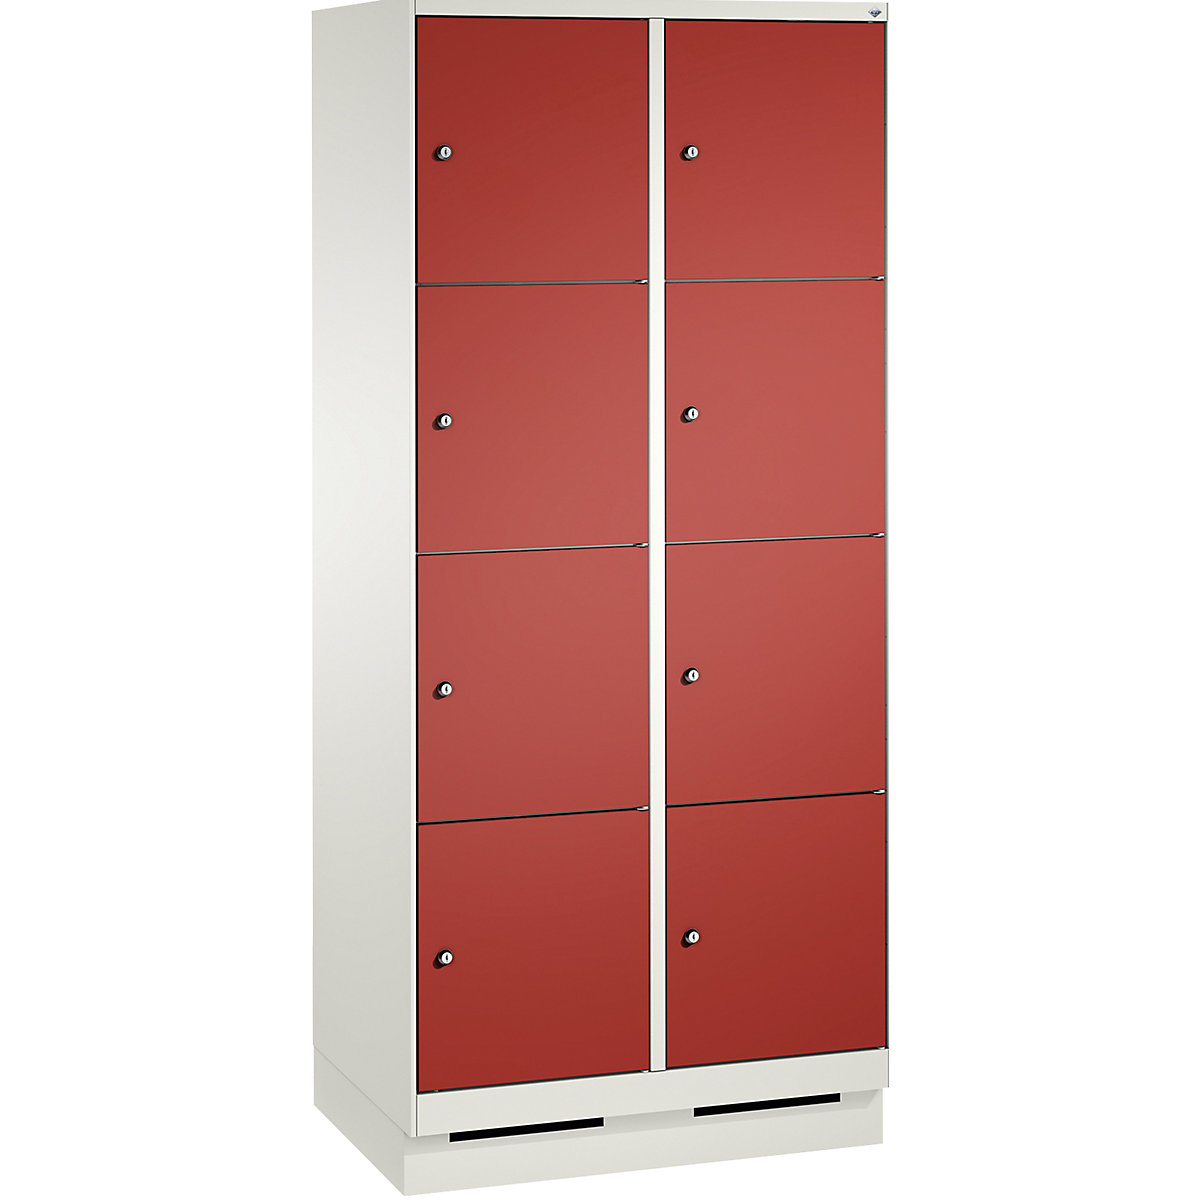 Armoire à casiers sur socle EVOLO – C+P, 2 compartiments, 4 casiers chacun, largeur compartiments 400 mm, blanc trafic / rouge feu-4